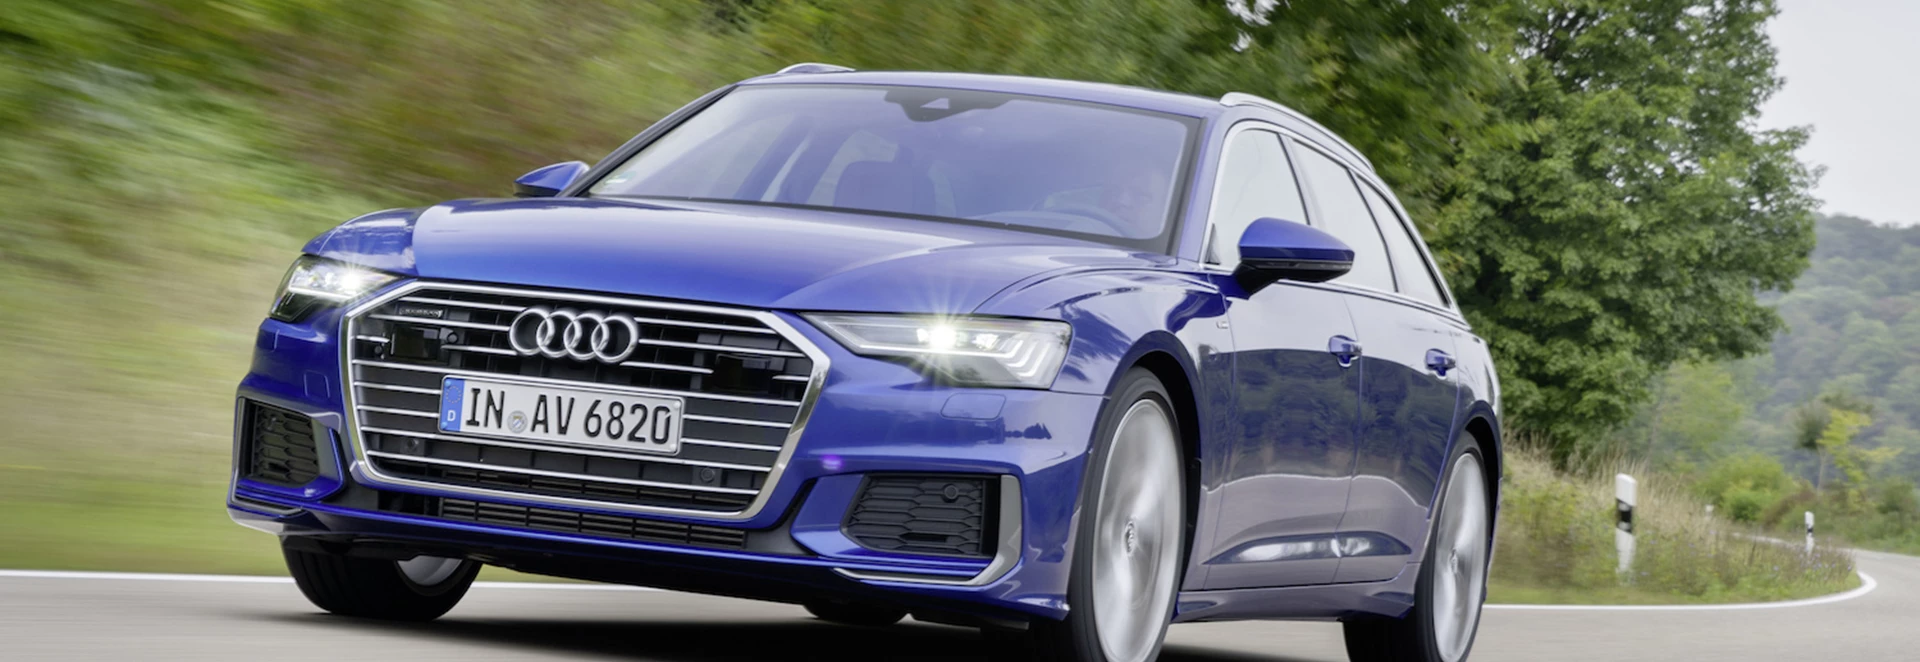 Audi A6 Avant 2019 review